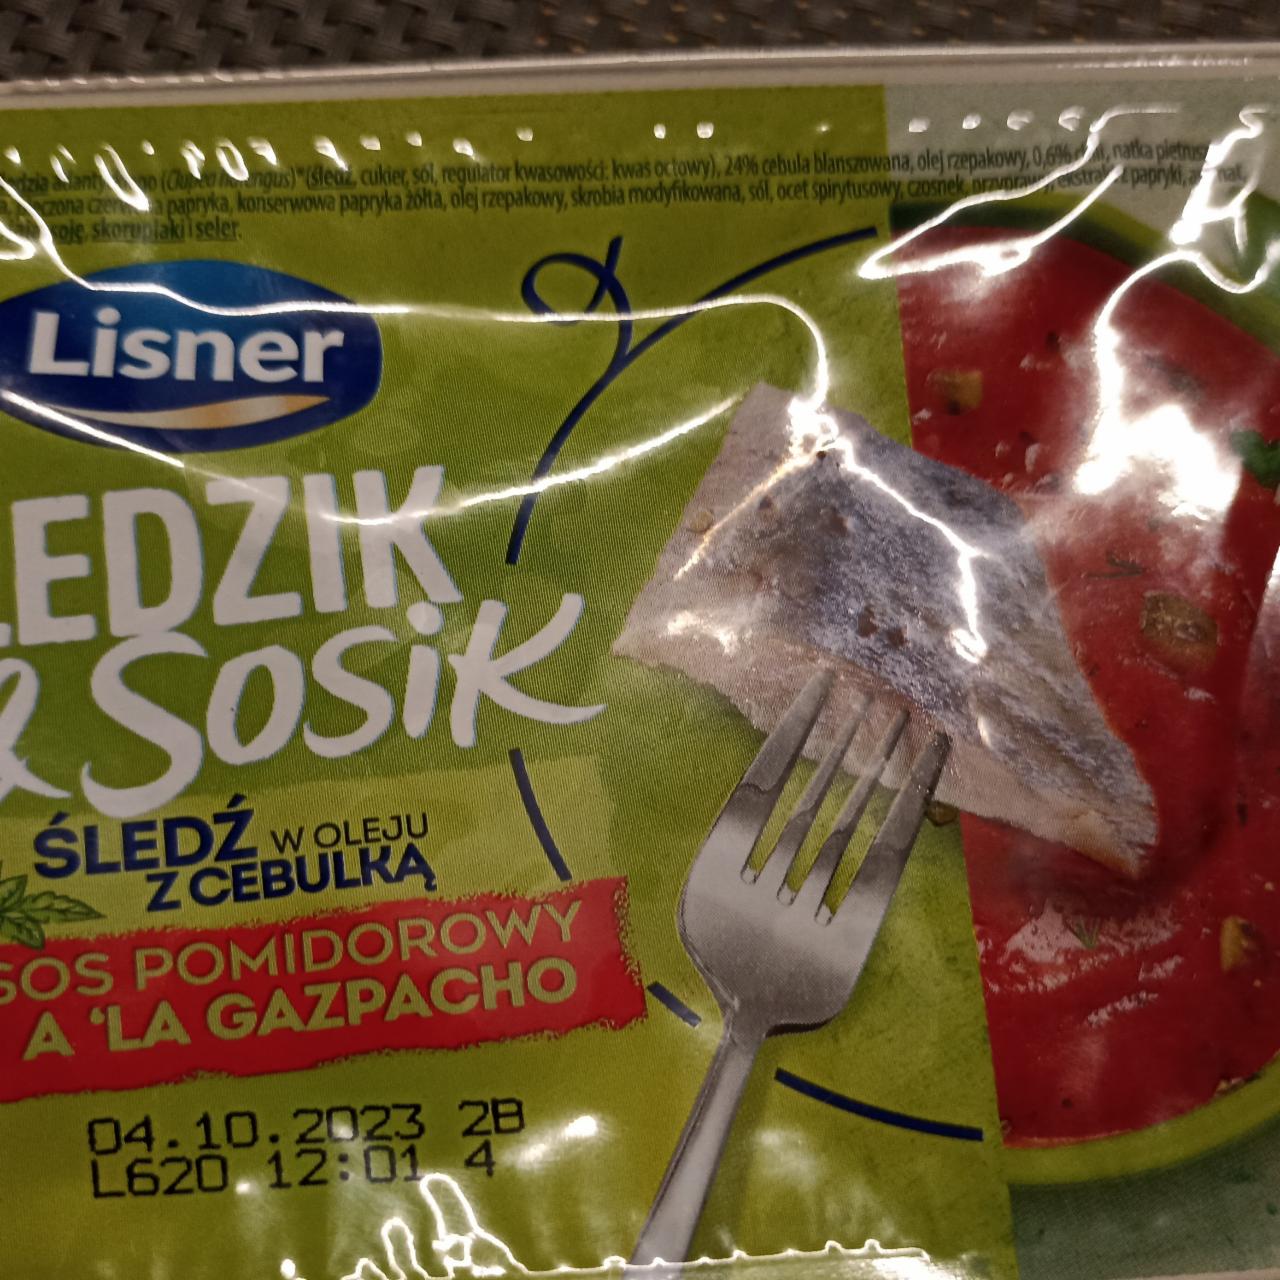 Fotografie - Śledzik & Sosik Śledź w oleju z cebulką sos pomidorowy a'la gazpacho Lisner